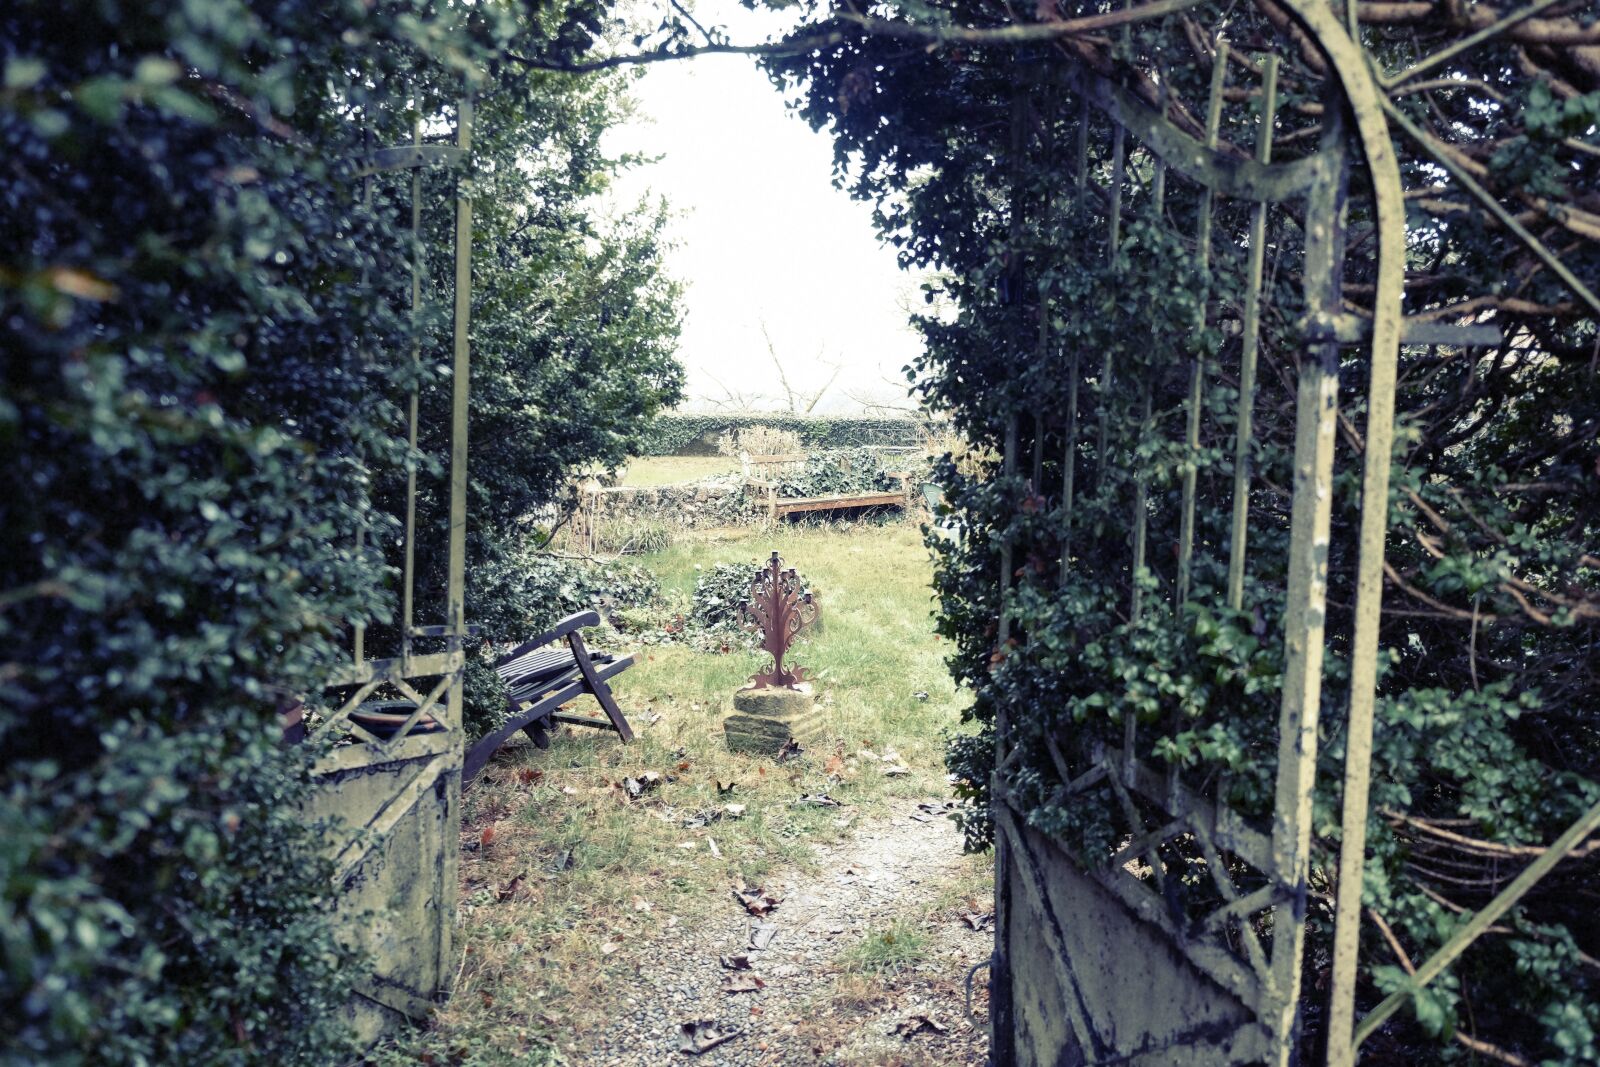 Fujifilm X-E2 sample photo. Backyard, garden, vines photography